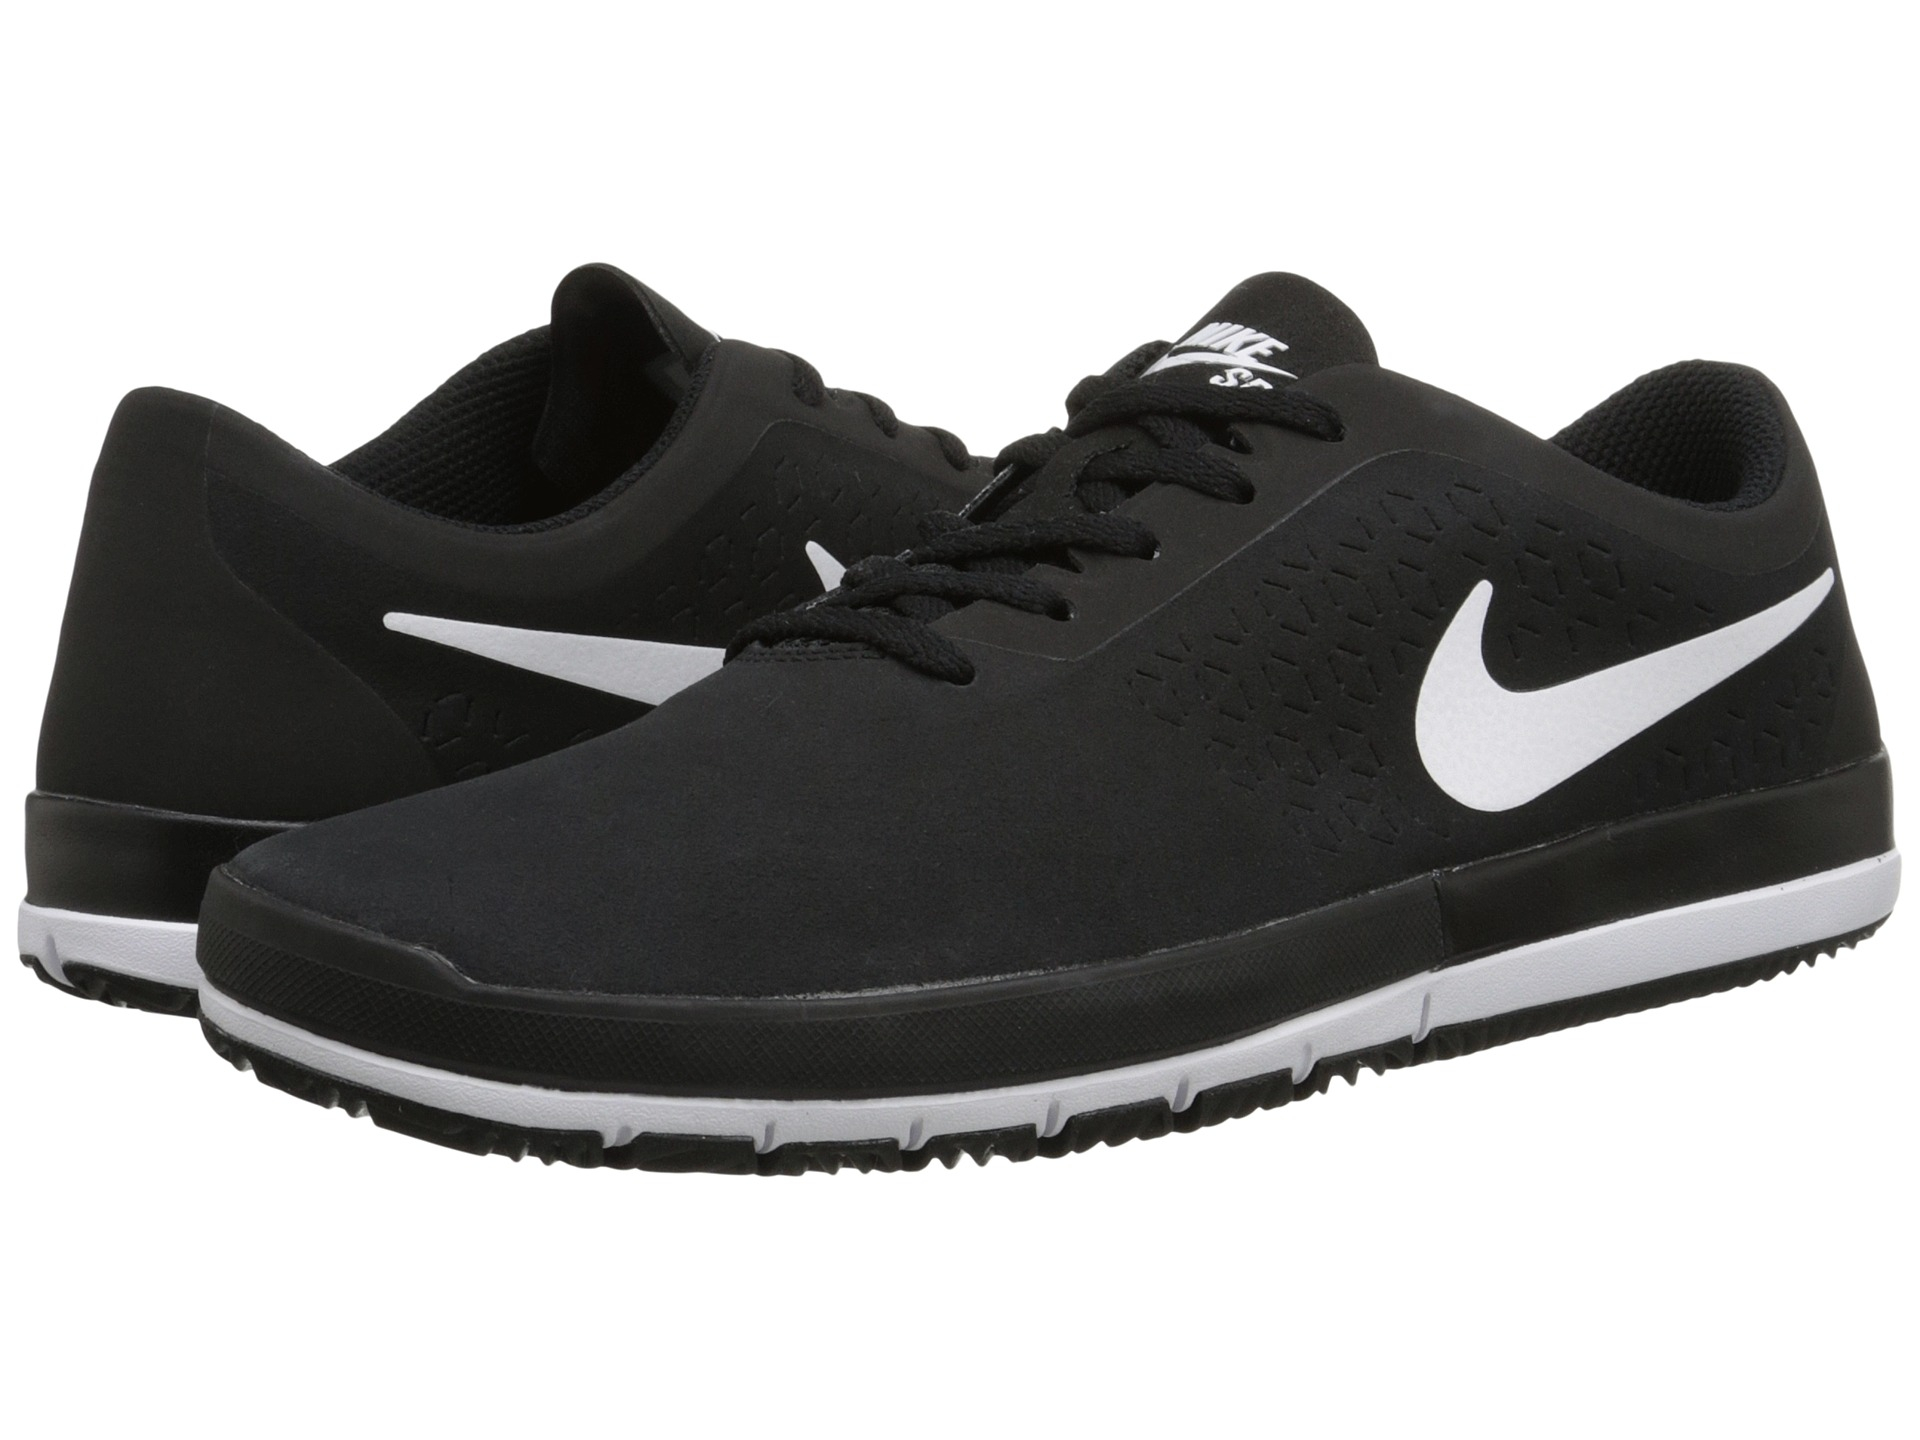 Nike Free Sb Nano in Black/White (Black) for Men - Lyst